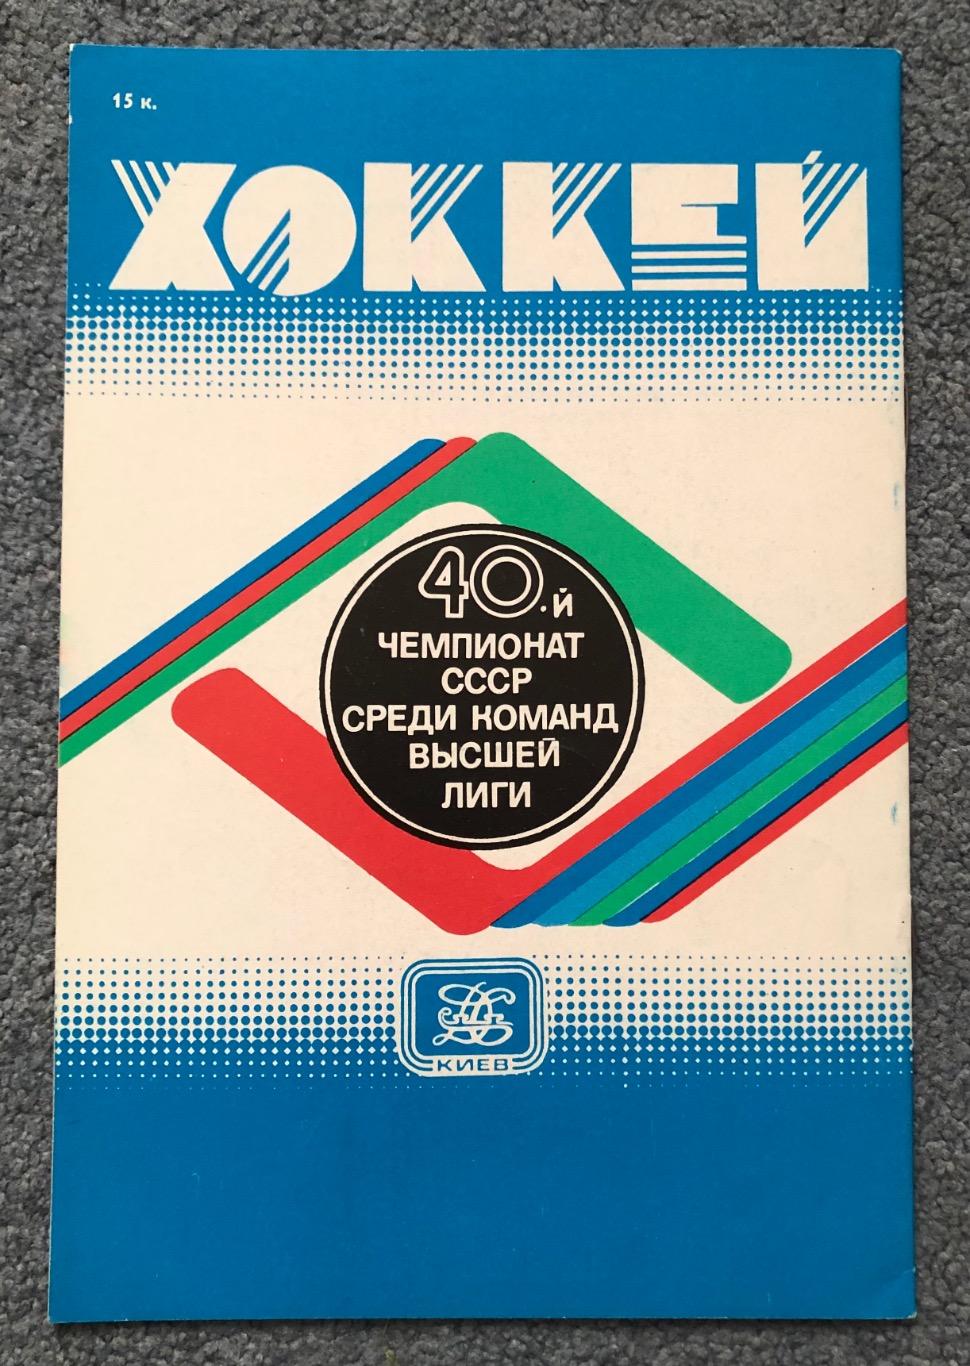 Сокол Киев - ЦСКА, 26.01.1986 1